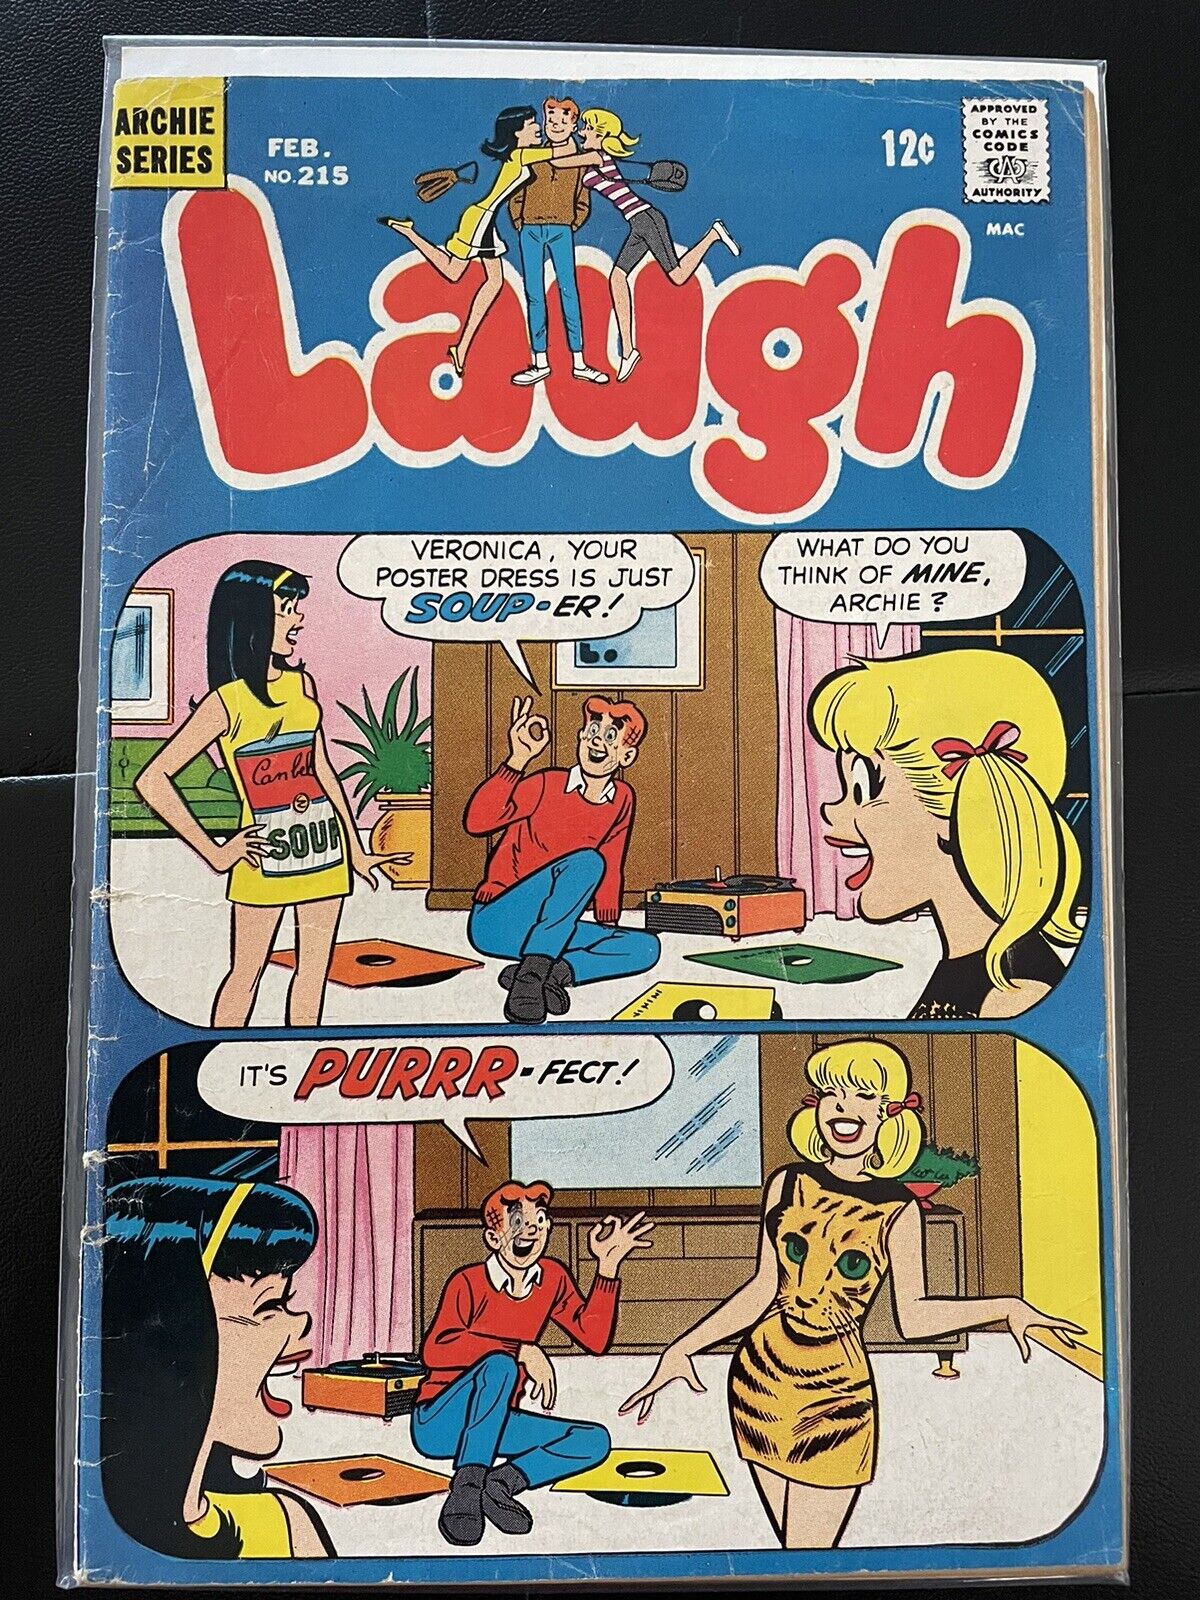 FEB 1969 (NM)ARCHIE SERIES LAUGH COMICS #215 SOUP-ER PURRR-FECT RECORD PLAYER